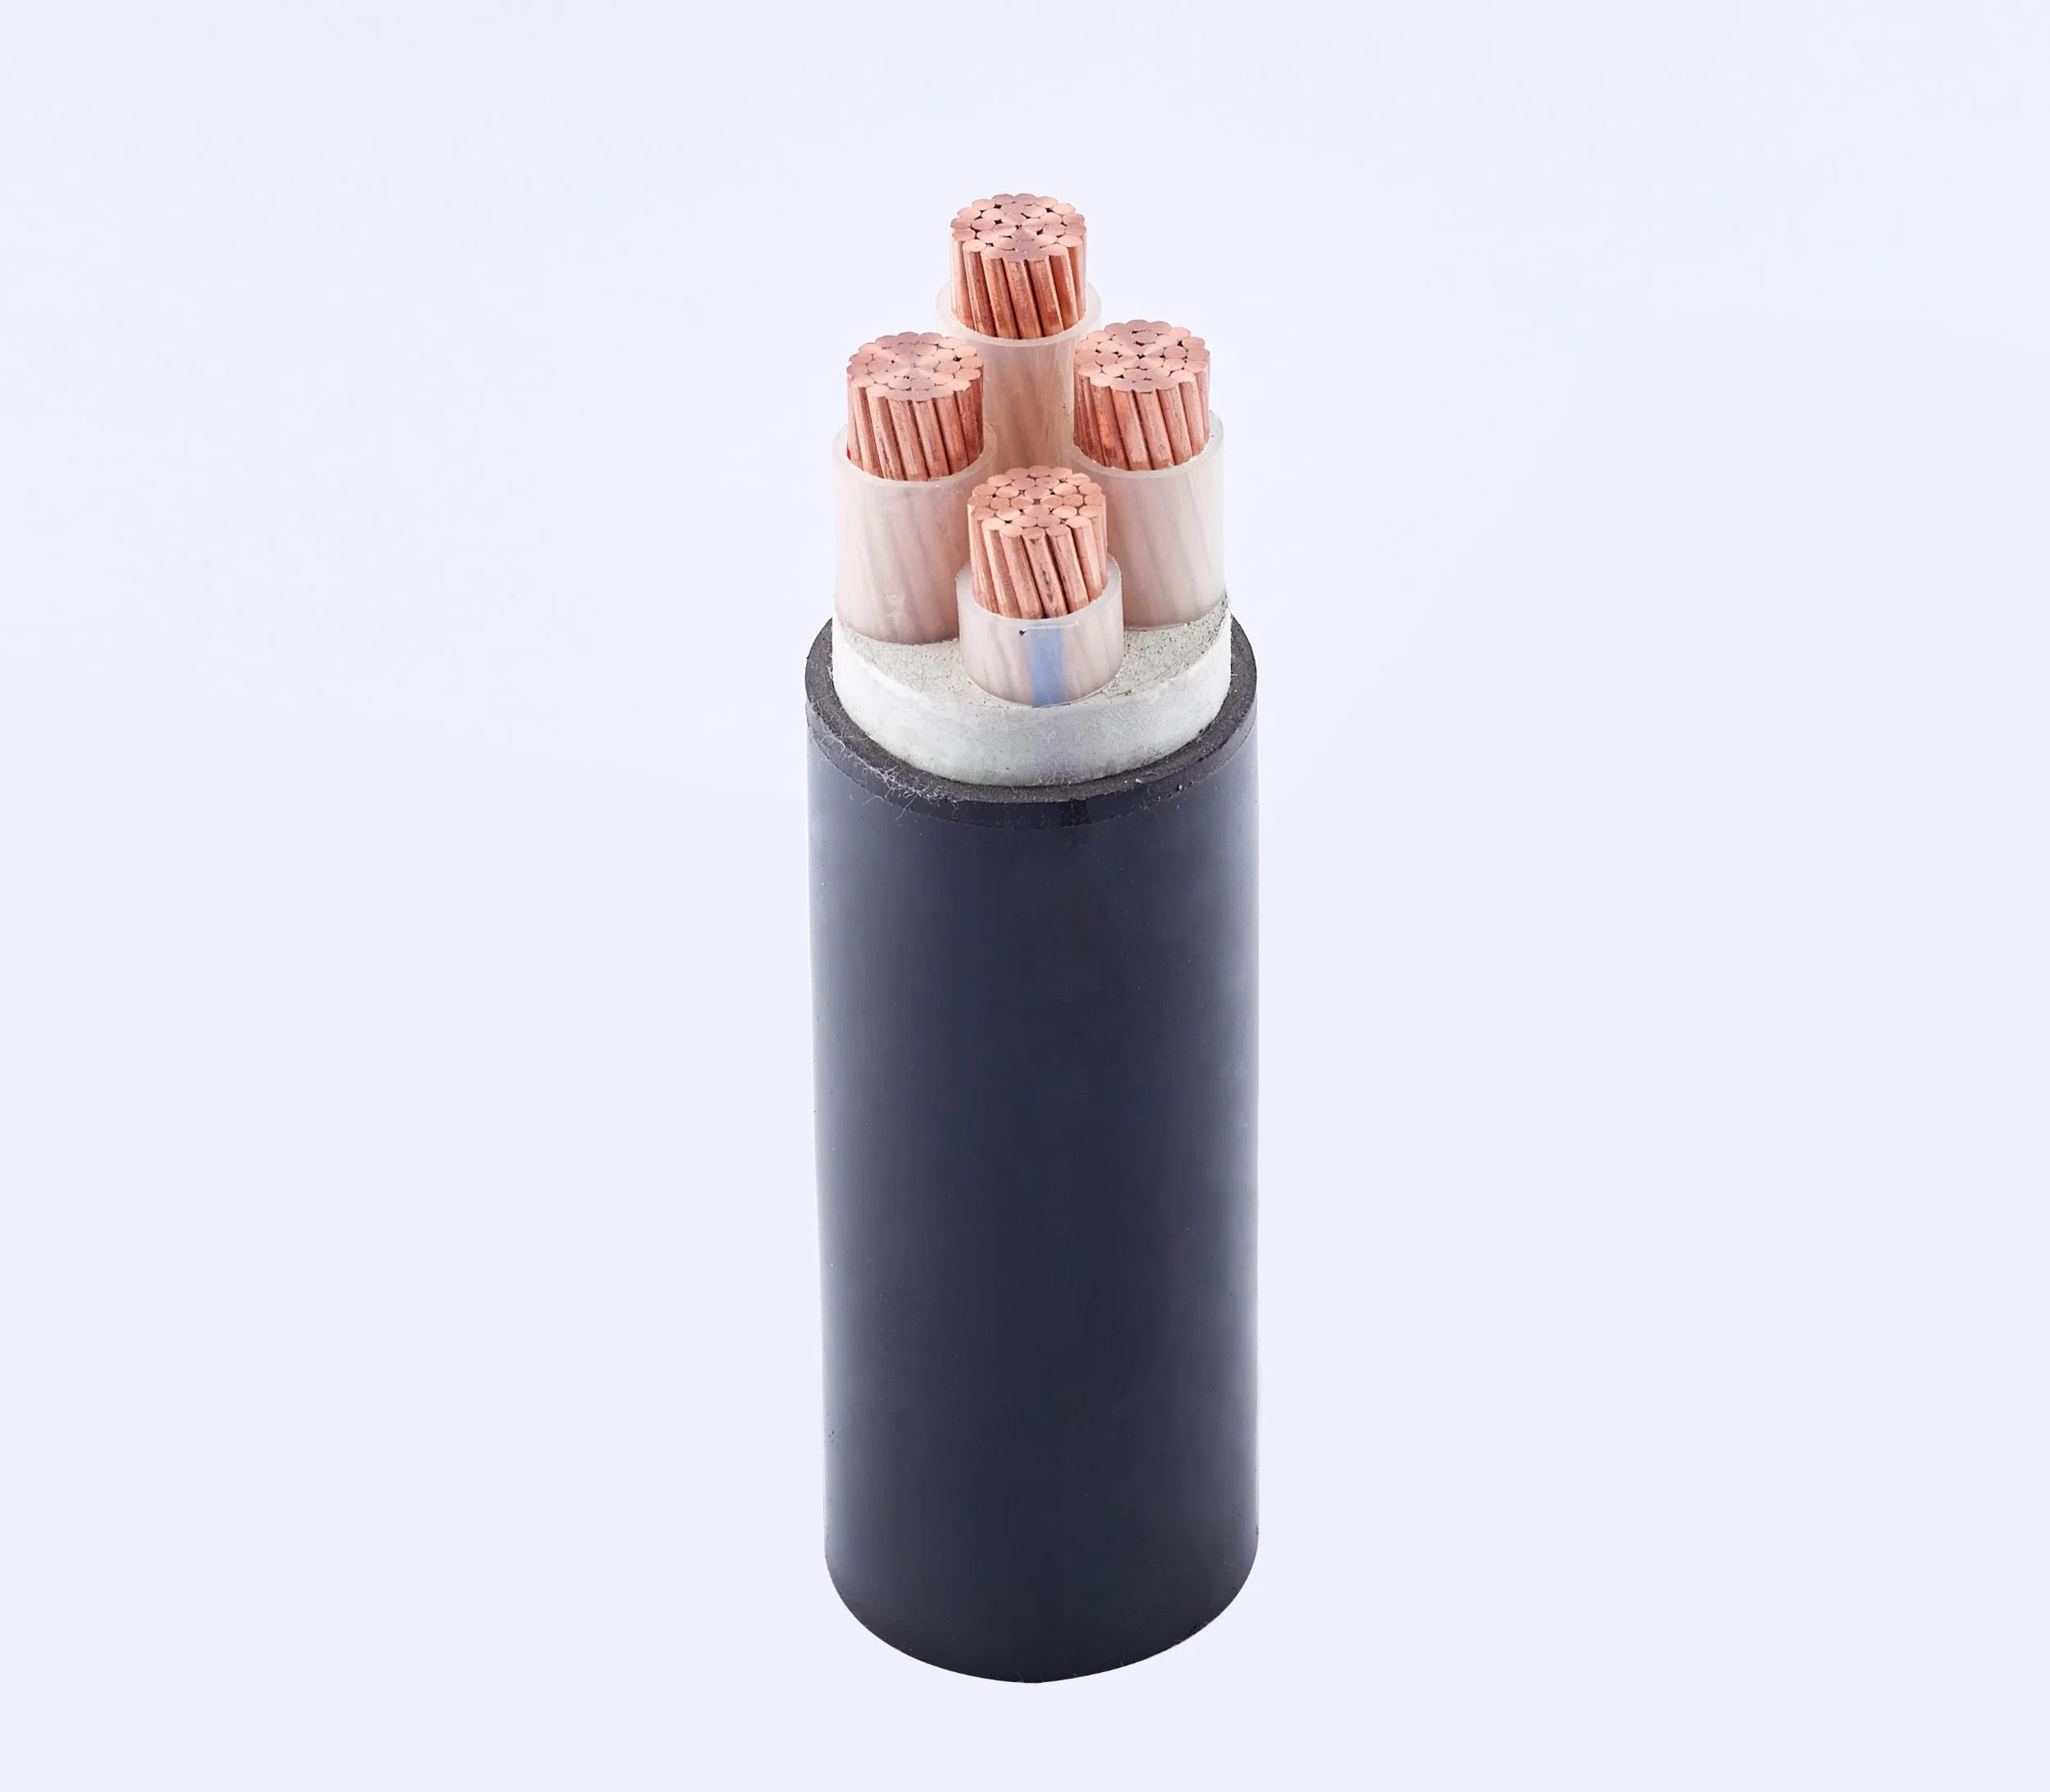 Câble d'alimentation isolé en XLPE à conducteur en cuivre/aluminium basse tension non blindé gainé en PVC.